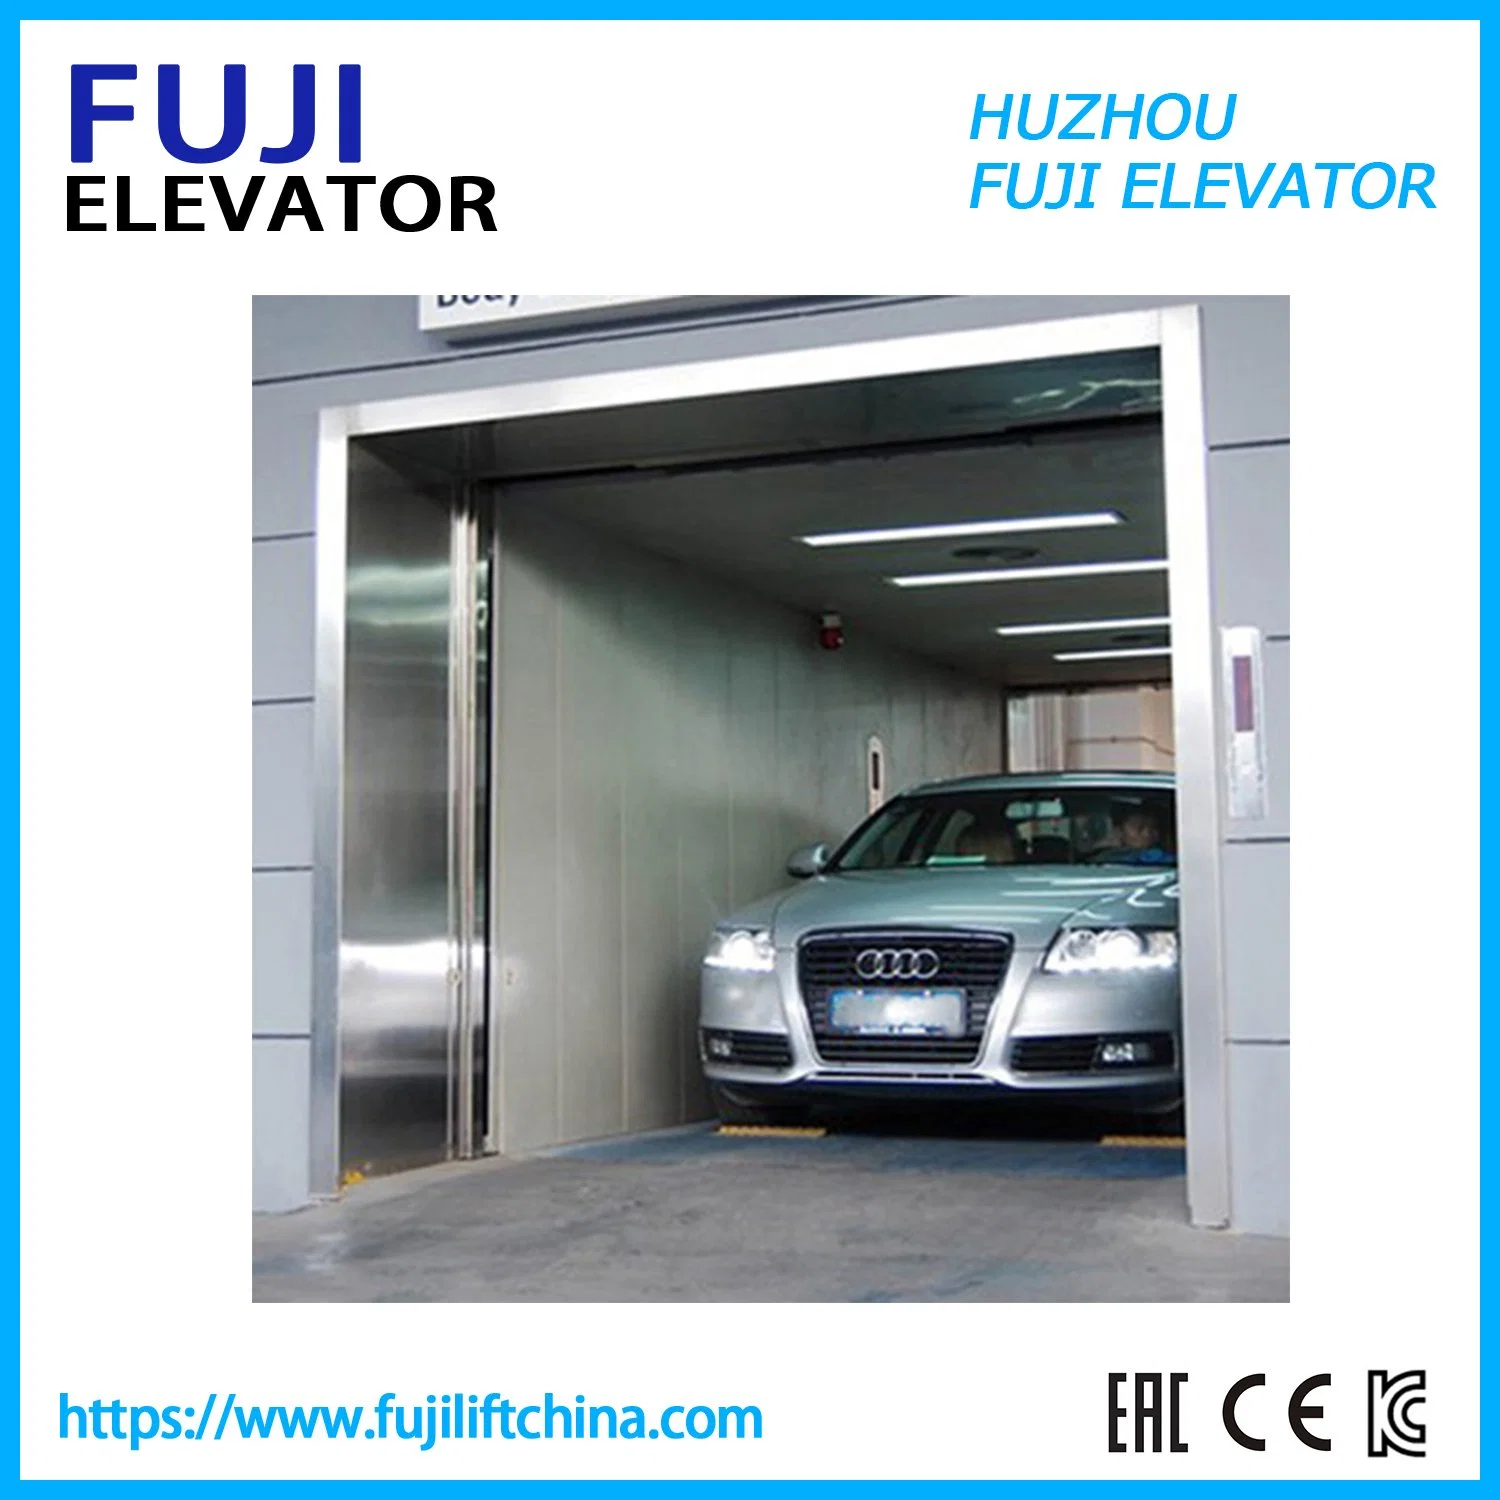 Sistema hidráulico Crosssing Auto Home Freight Elevator Garage Car Goods Elevator Ascensor para taller de reparación